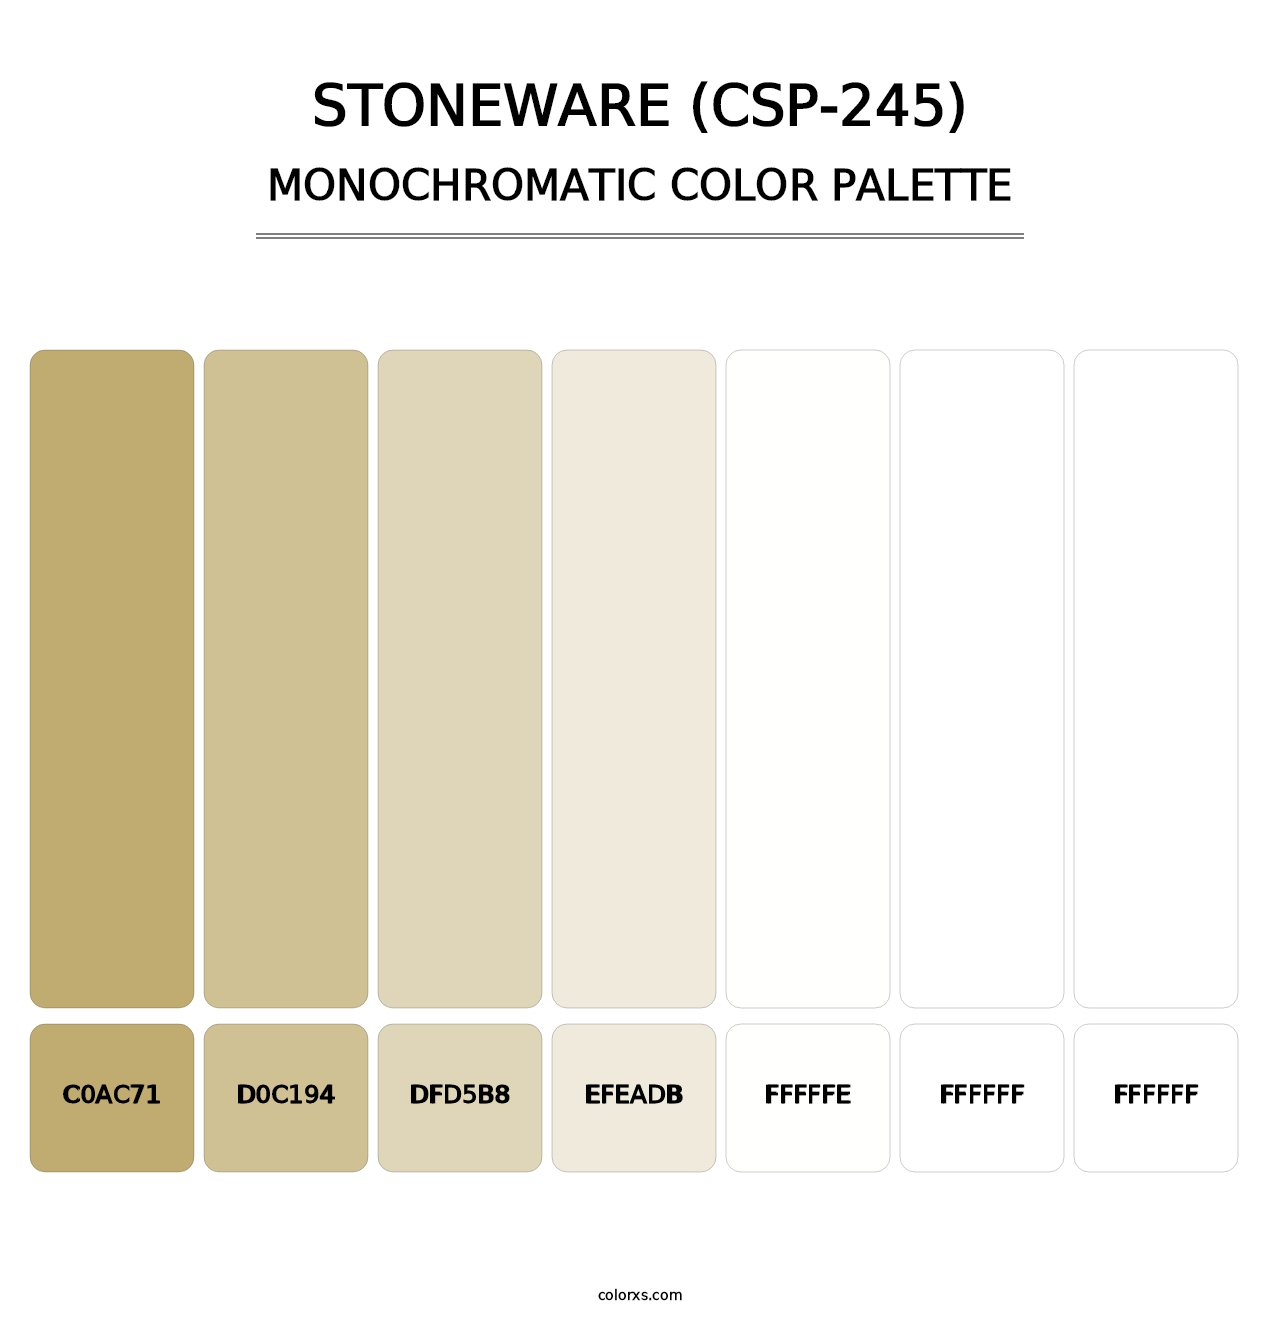 Stoneware (CSP-245) - Monochromatic Color Palette